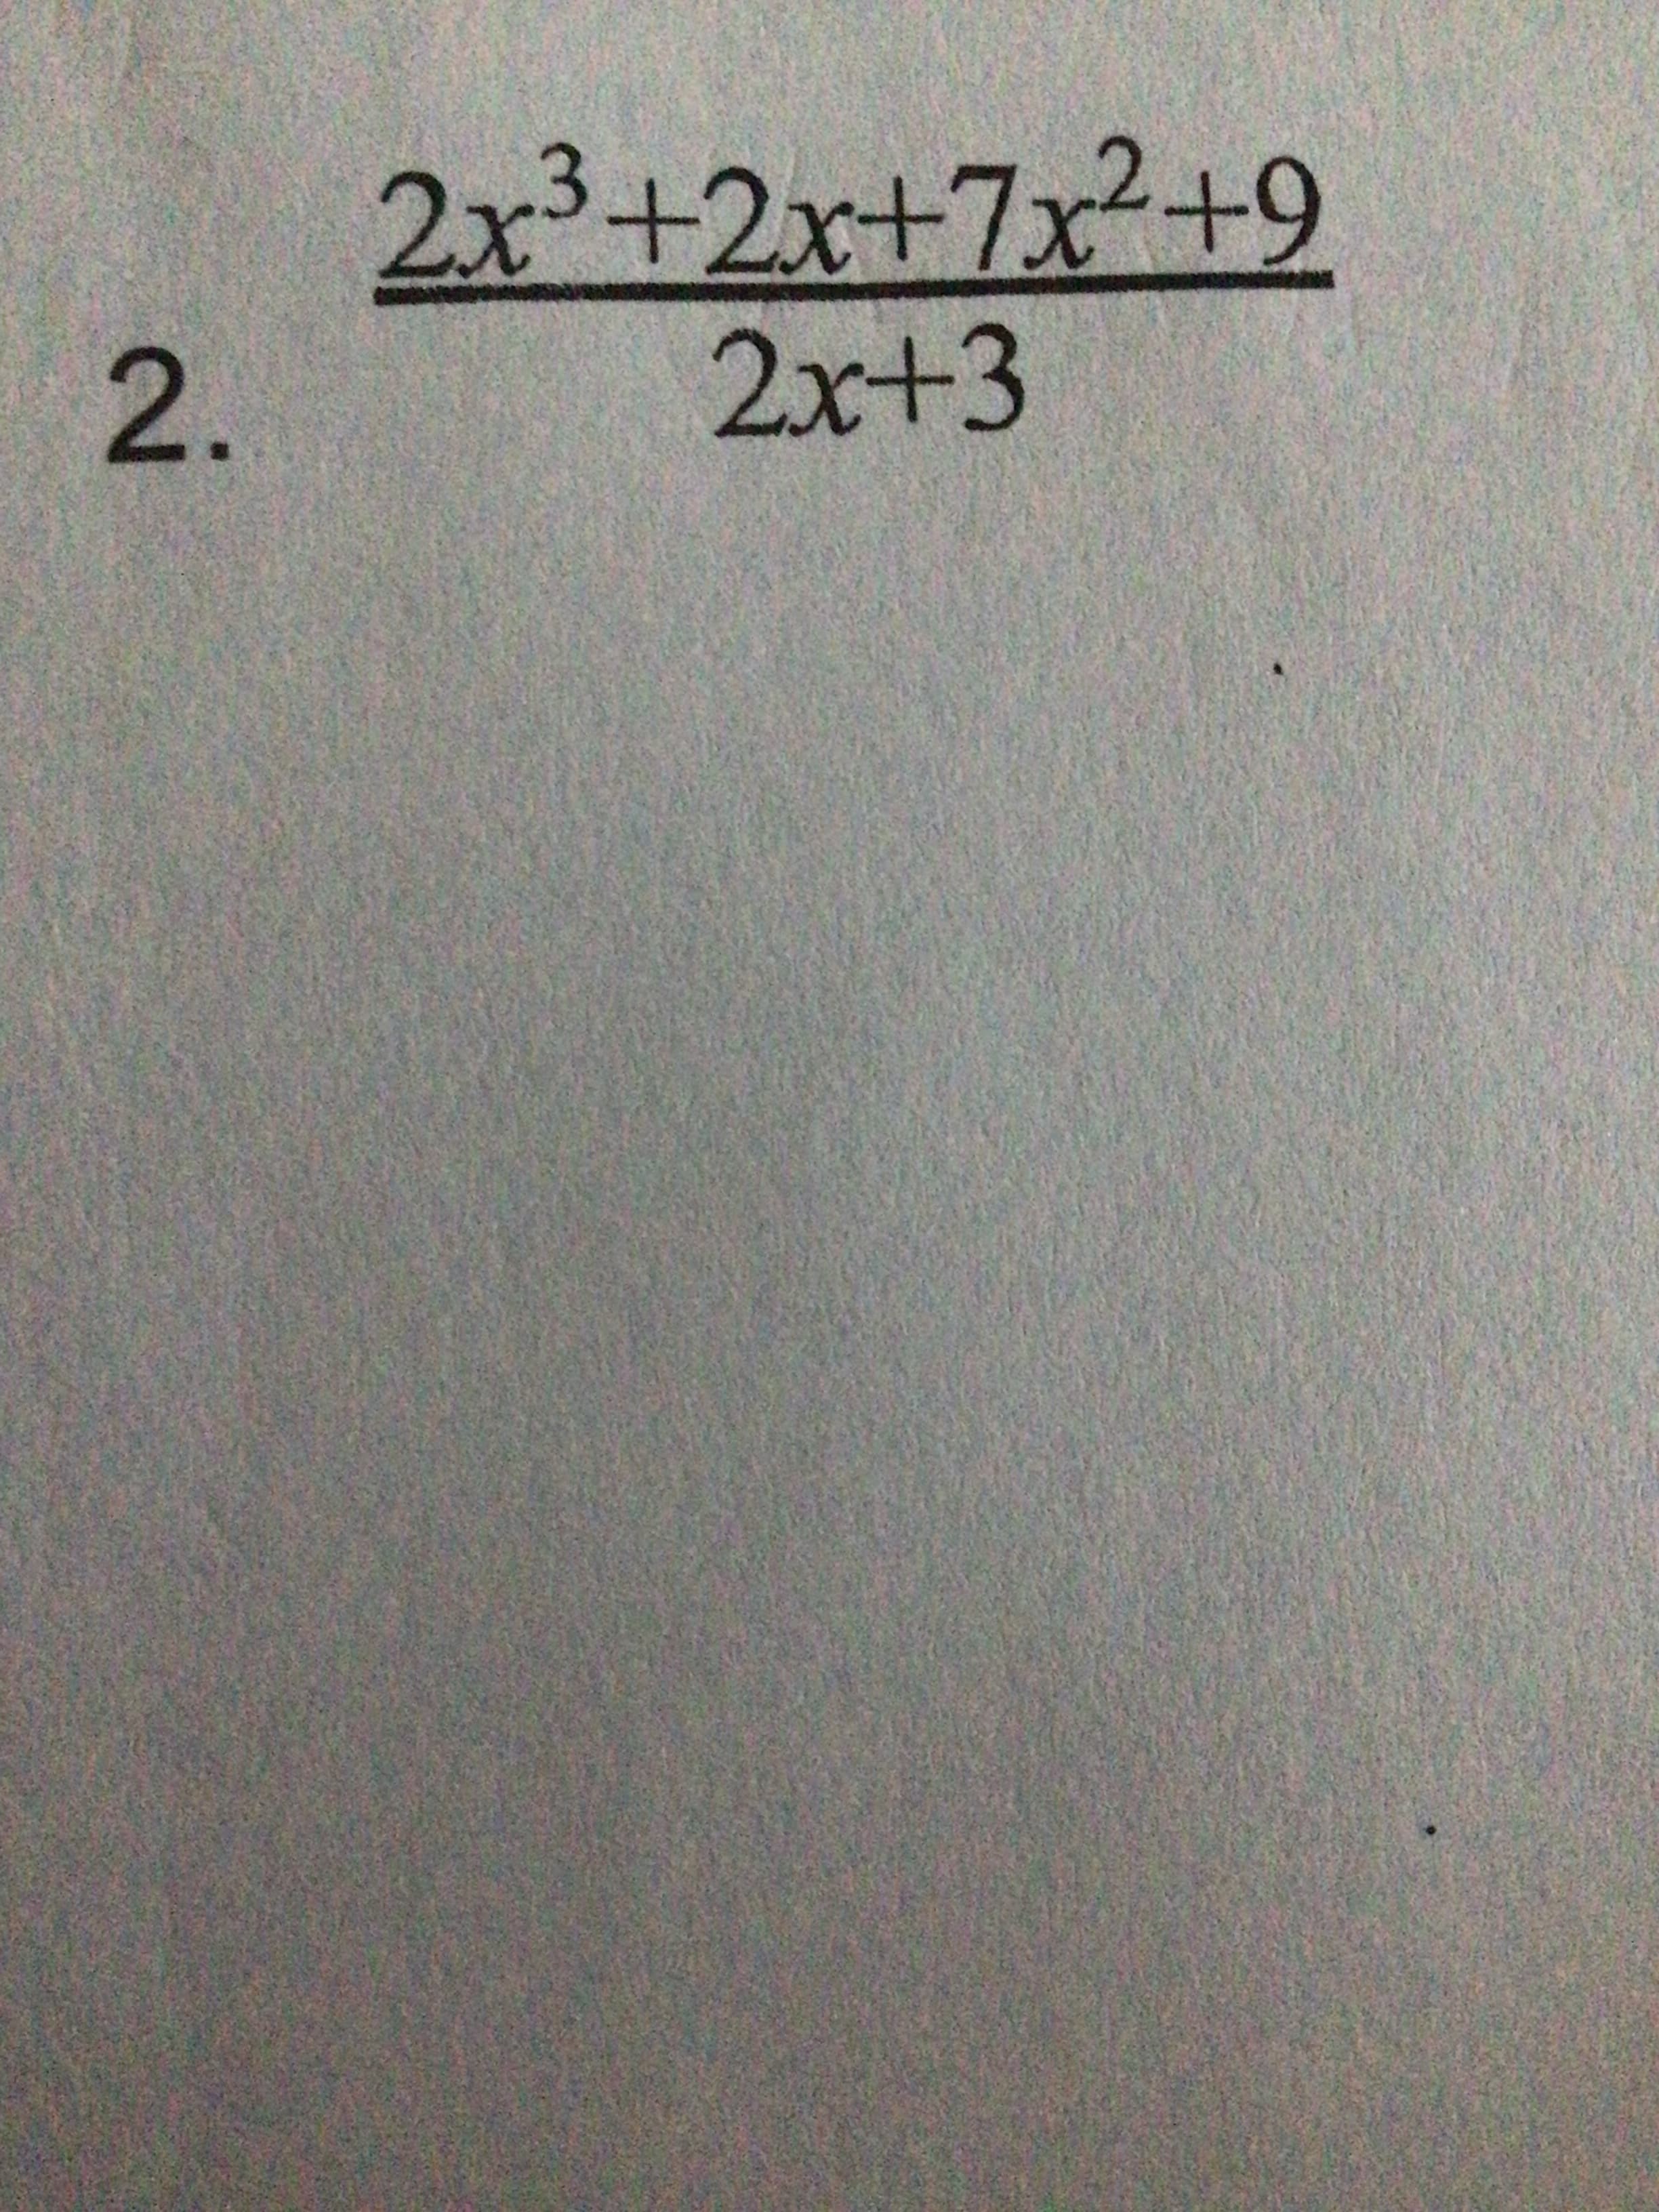 2.
2x³+2x+7x²+9
2x+3
